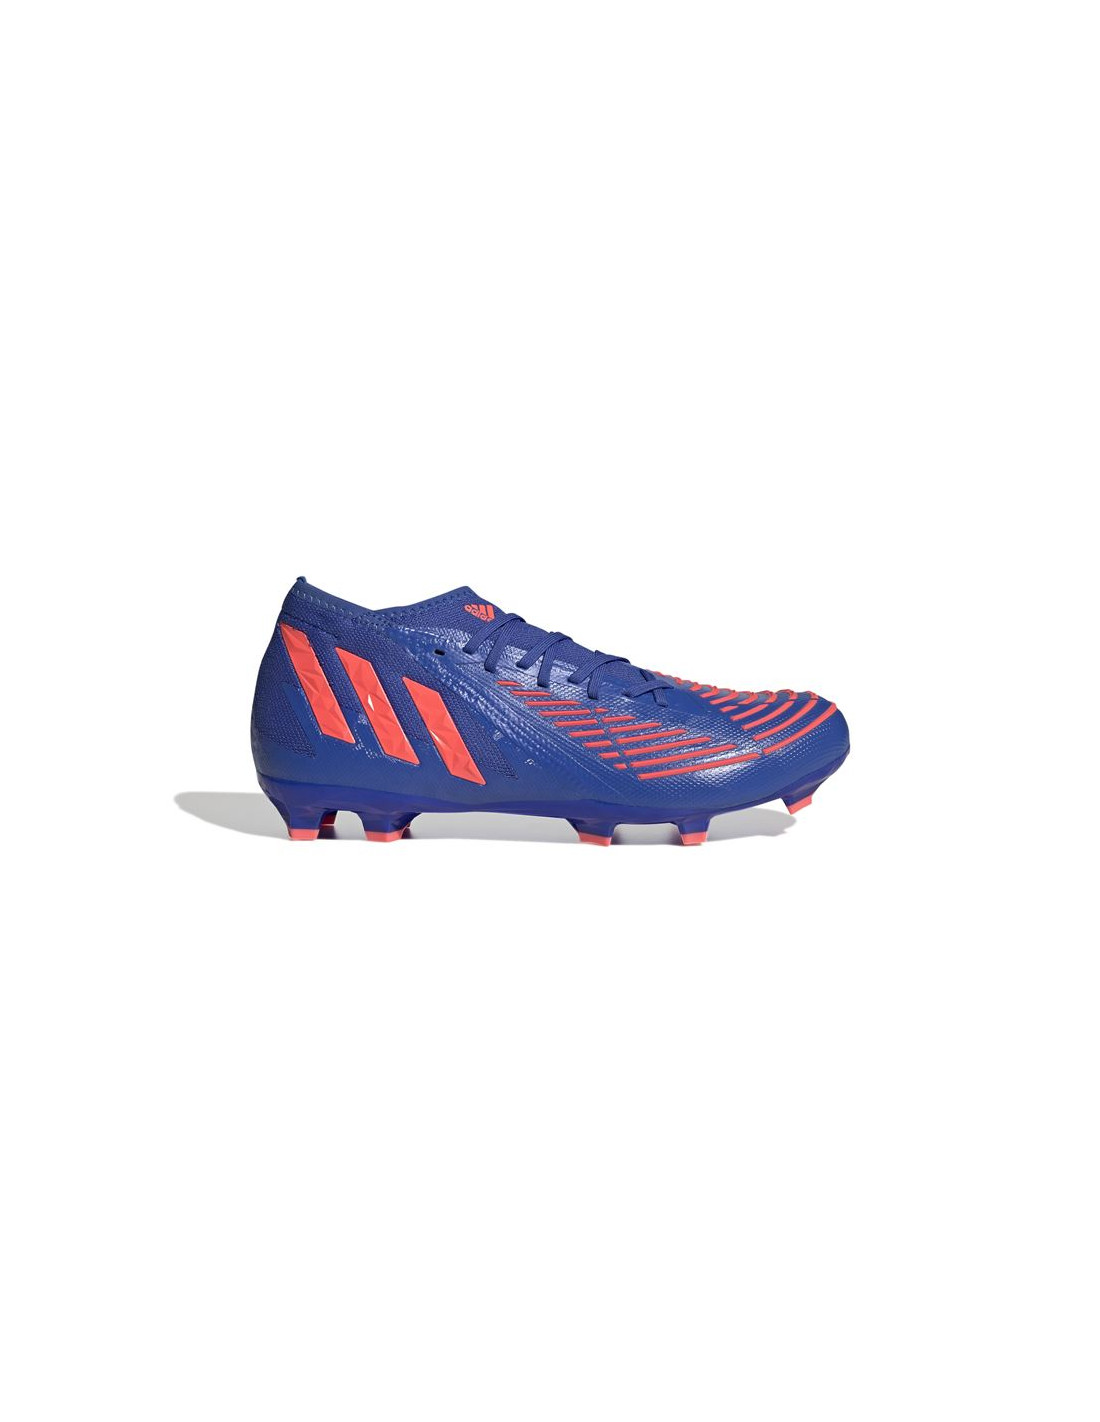 Botas de fútbol adidas predator edge.2 blue m